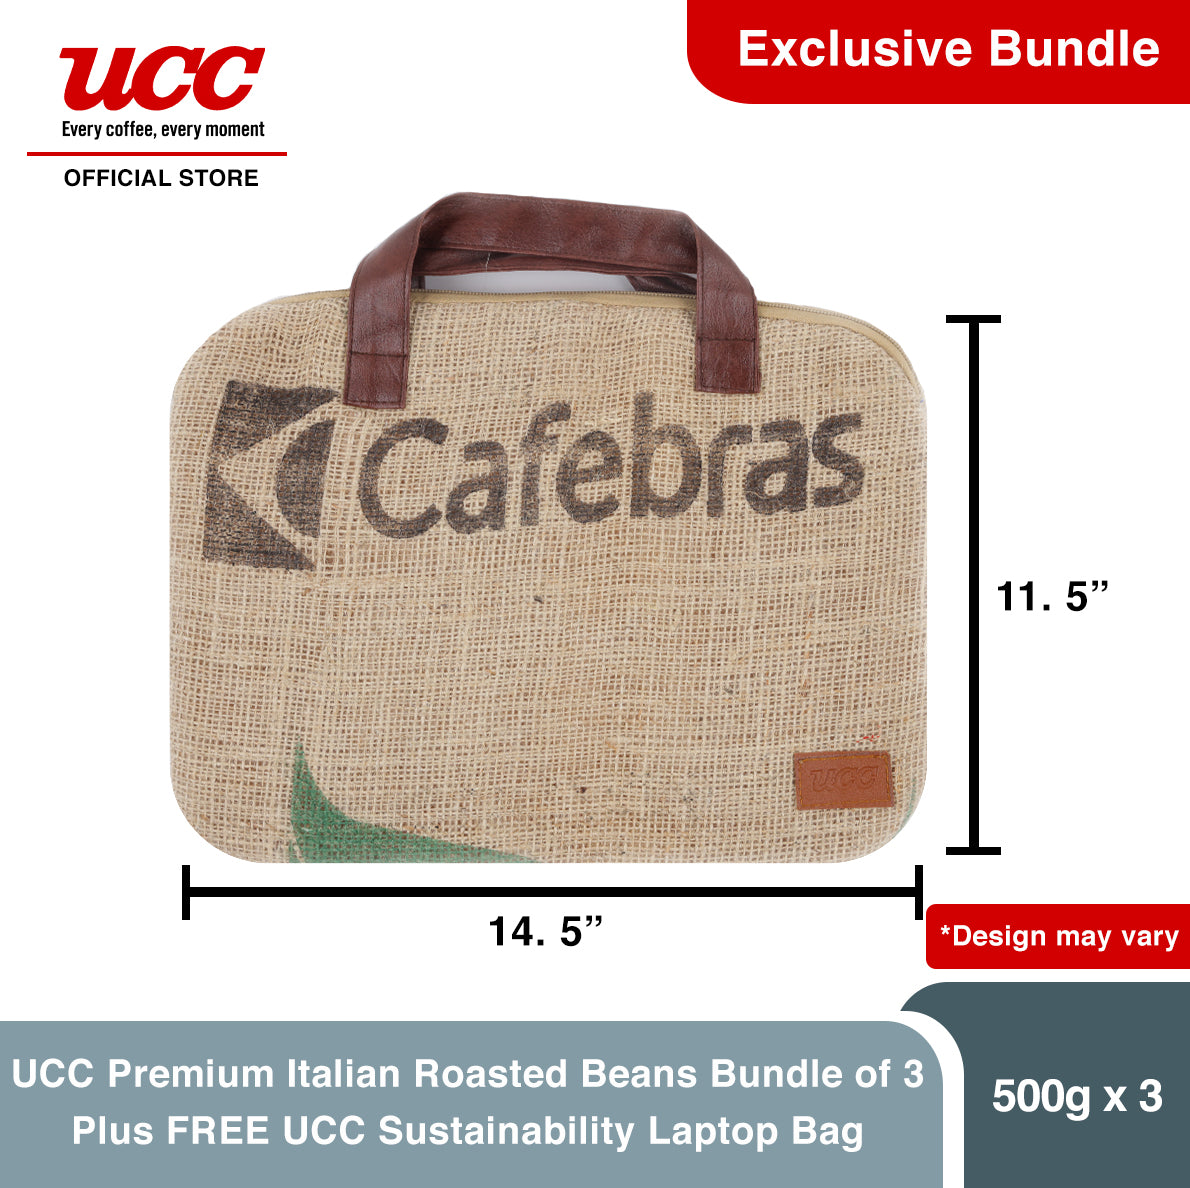 UCC Premium Italian Roasted Beans 500g Bundle of 3 Plus FREE UCC Sustainability Laptop Bag